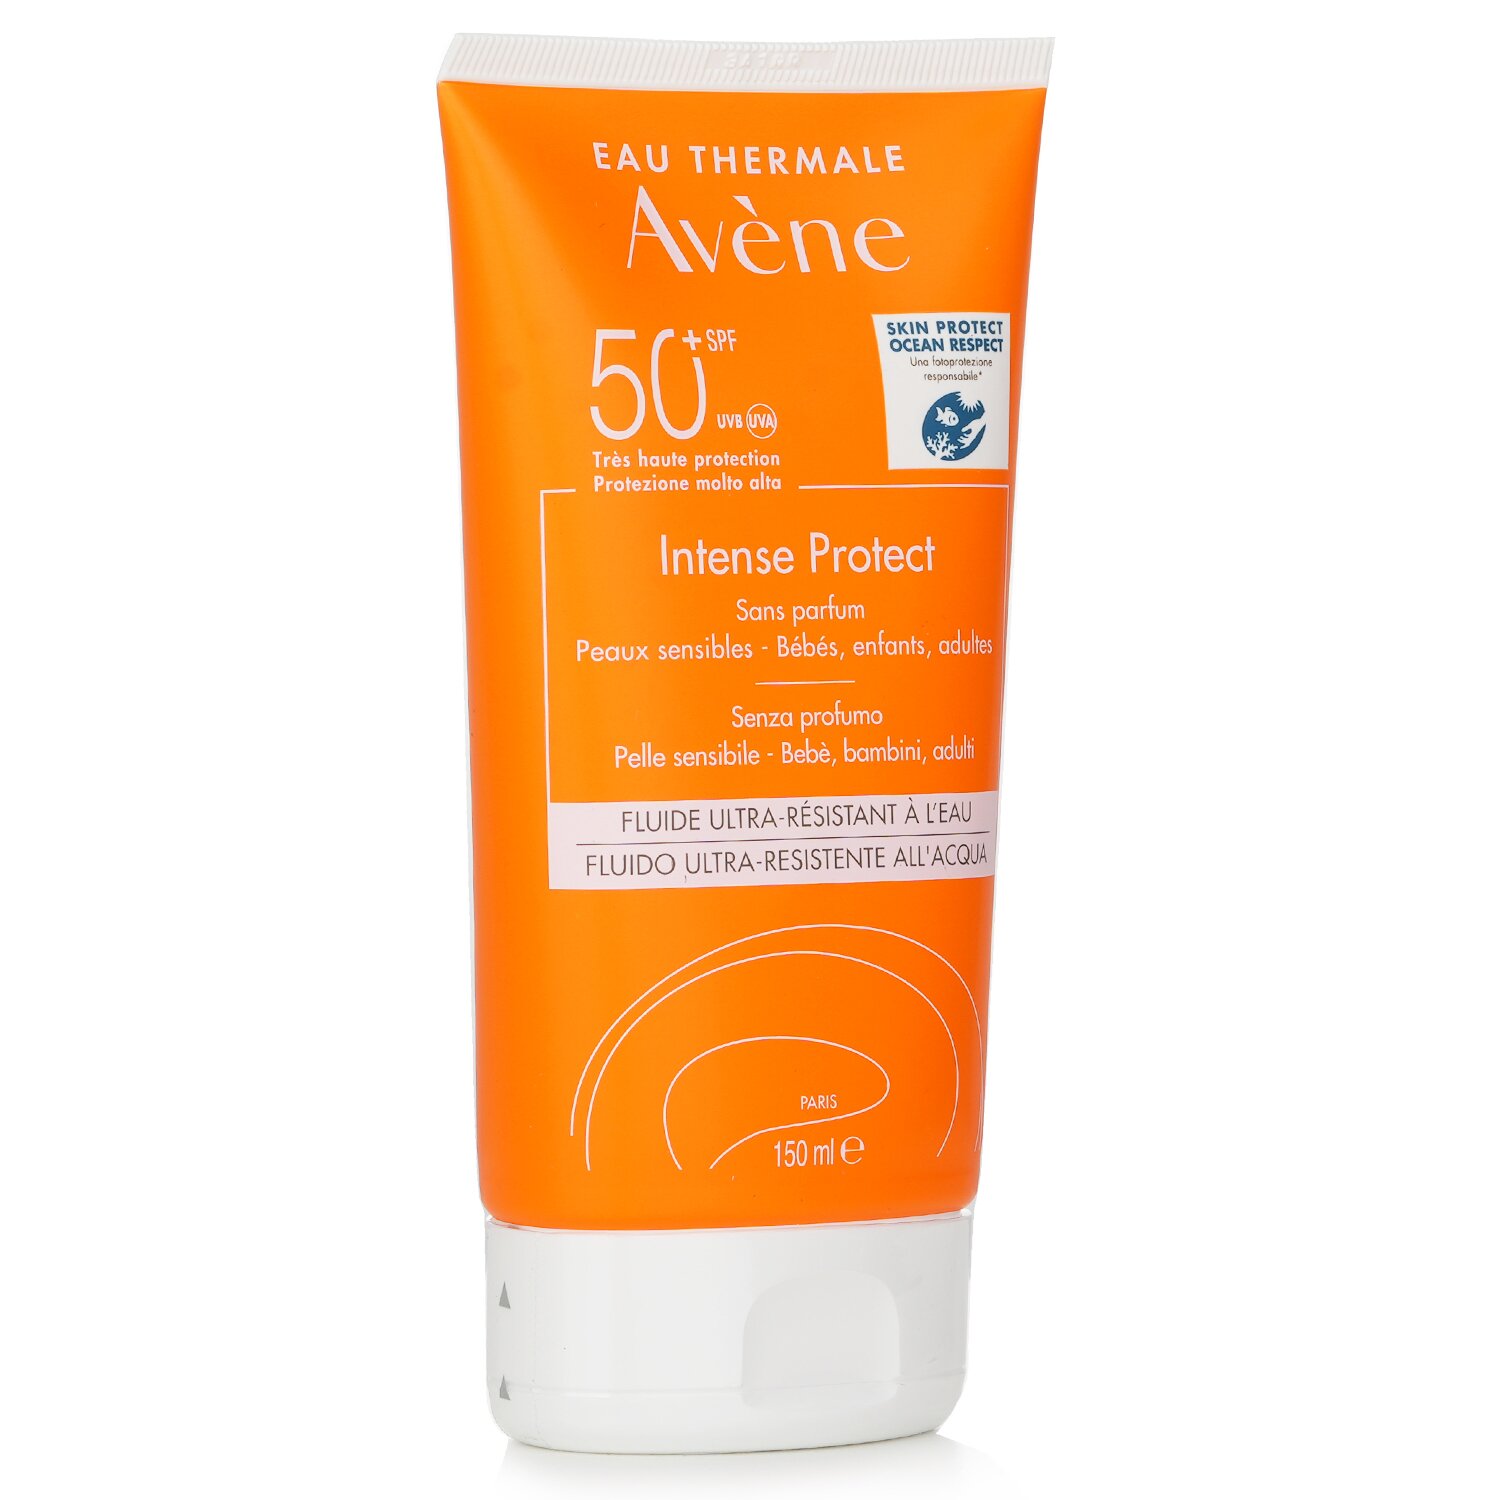 Avene Intense Protect SPF 50 (For Babies, Children, Adult) - For Sensitive Skin 150ml/5oz